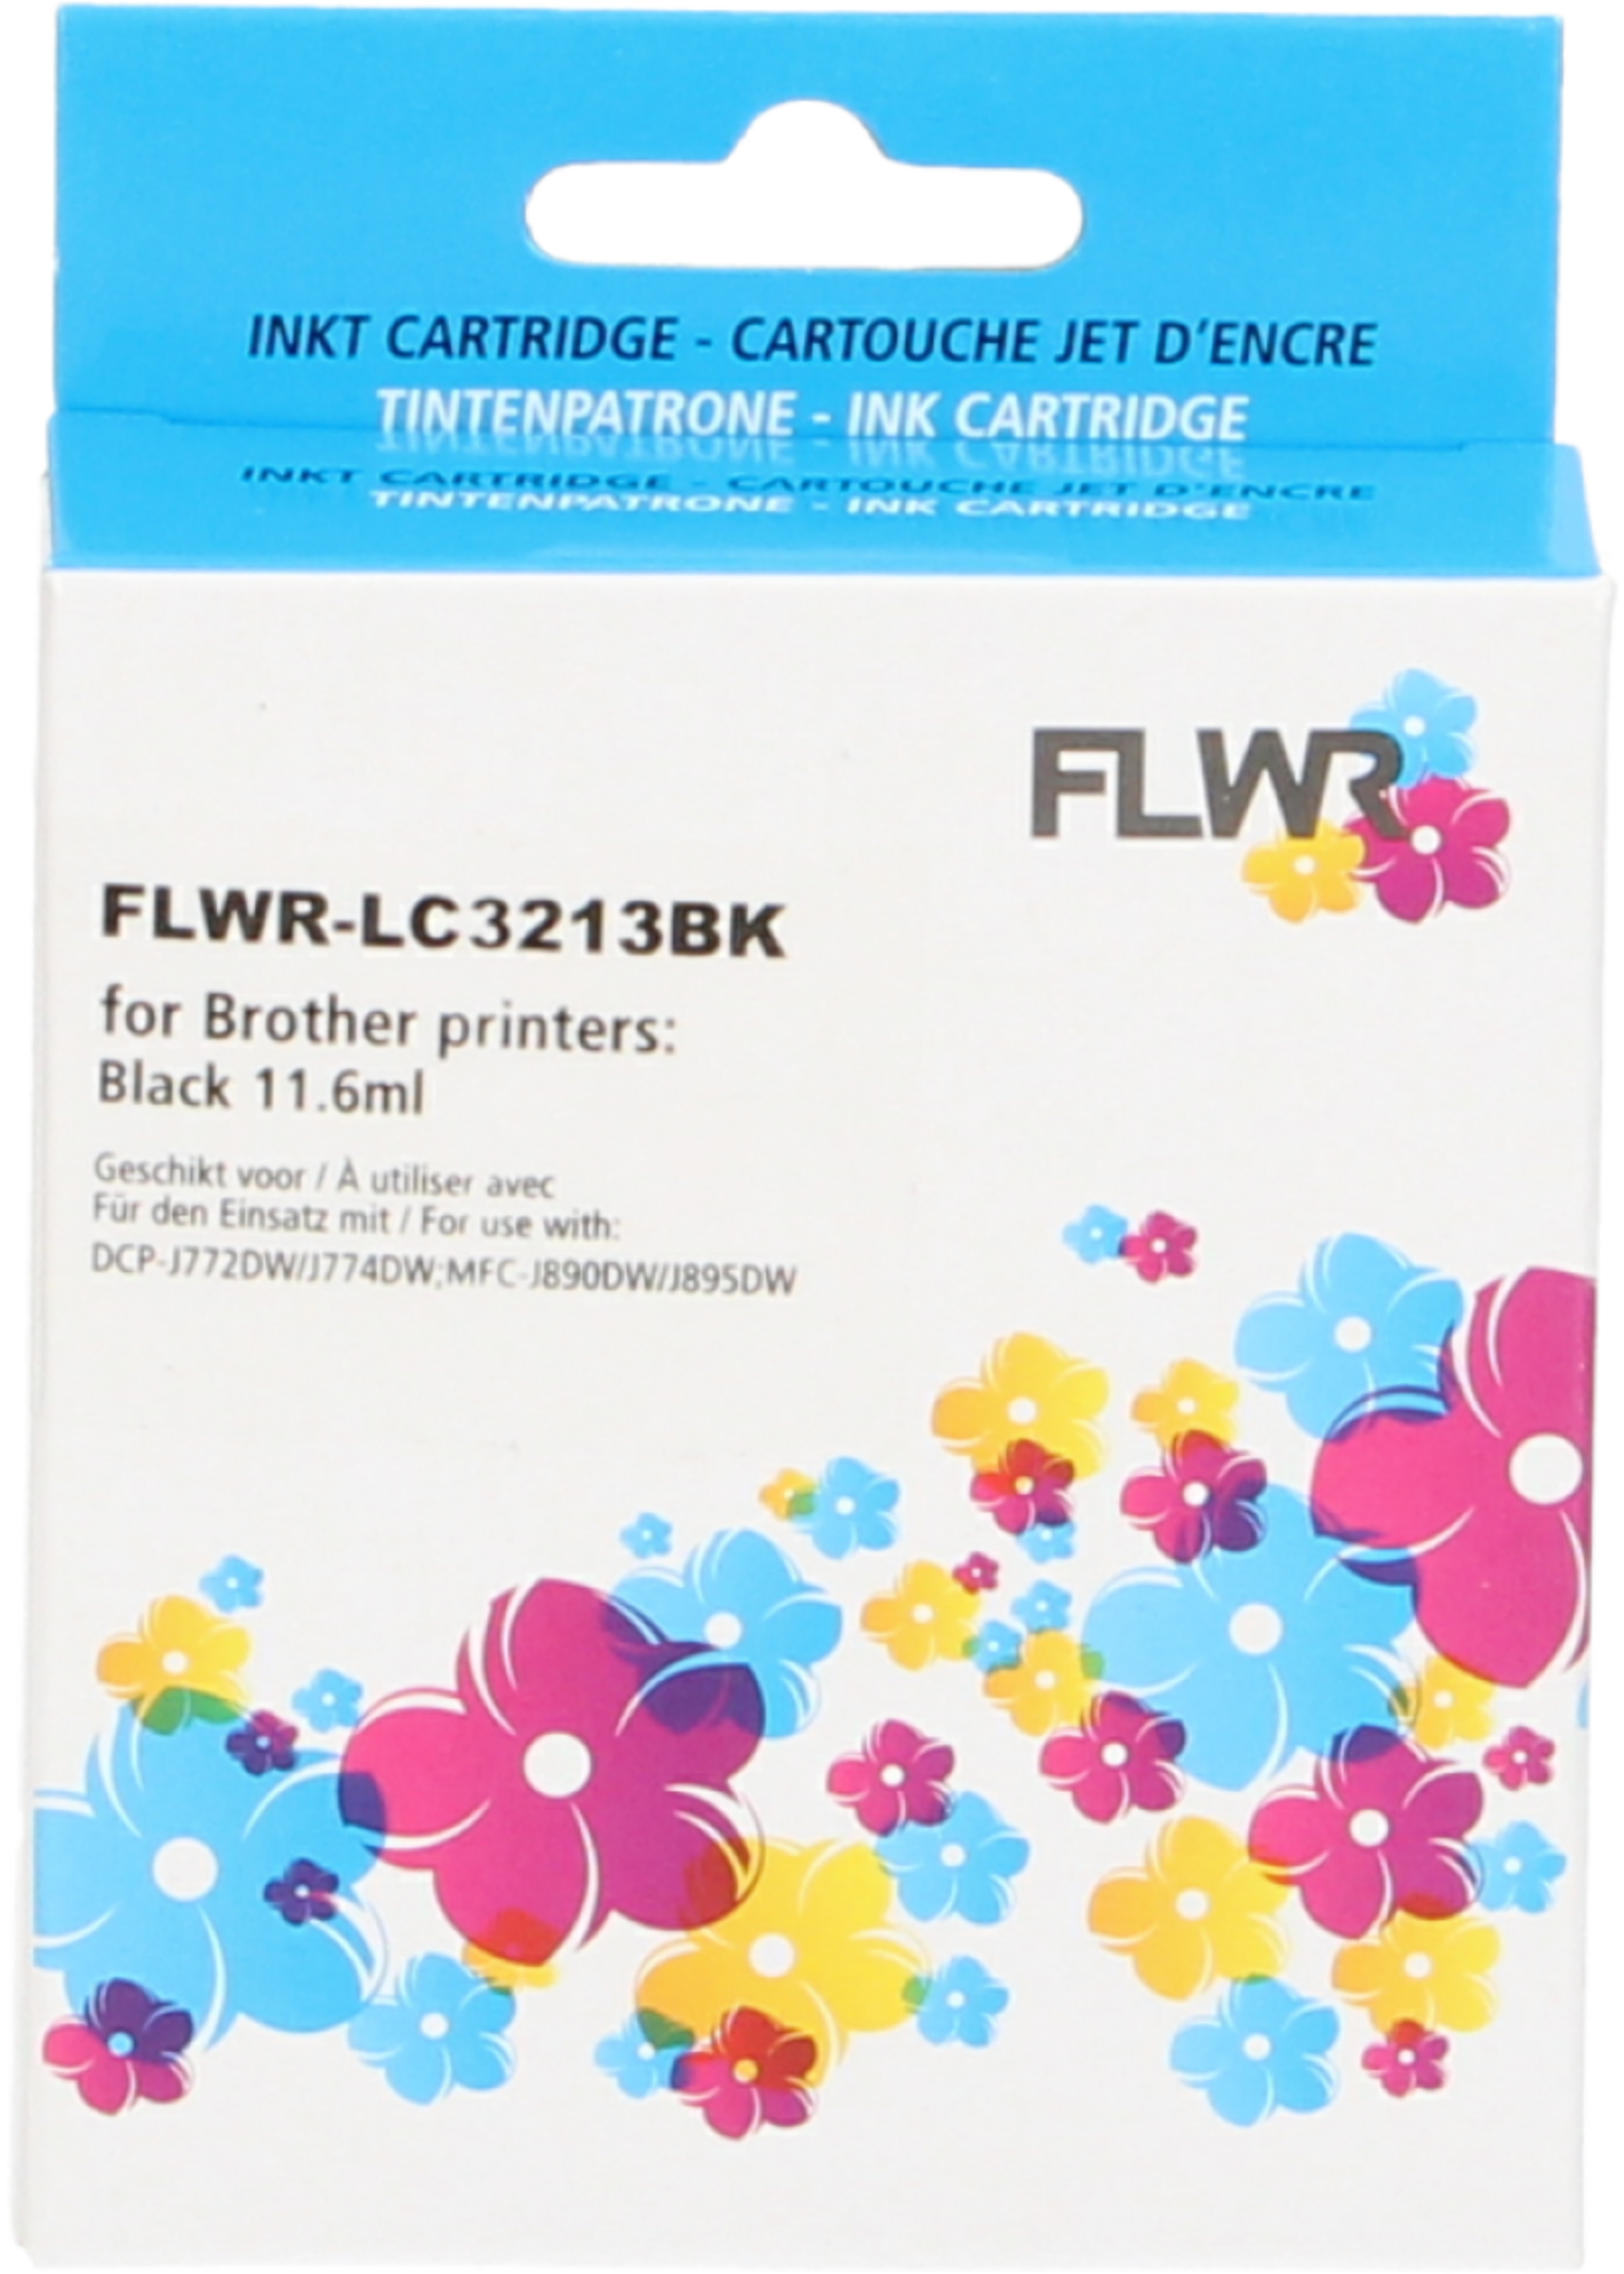 FLWR! FLWR - Cartridges / Brother LC-3211 / zwart / Geschikt voor Brother